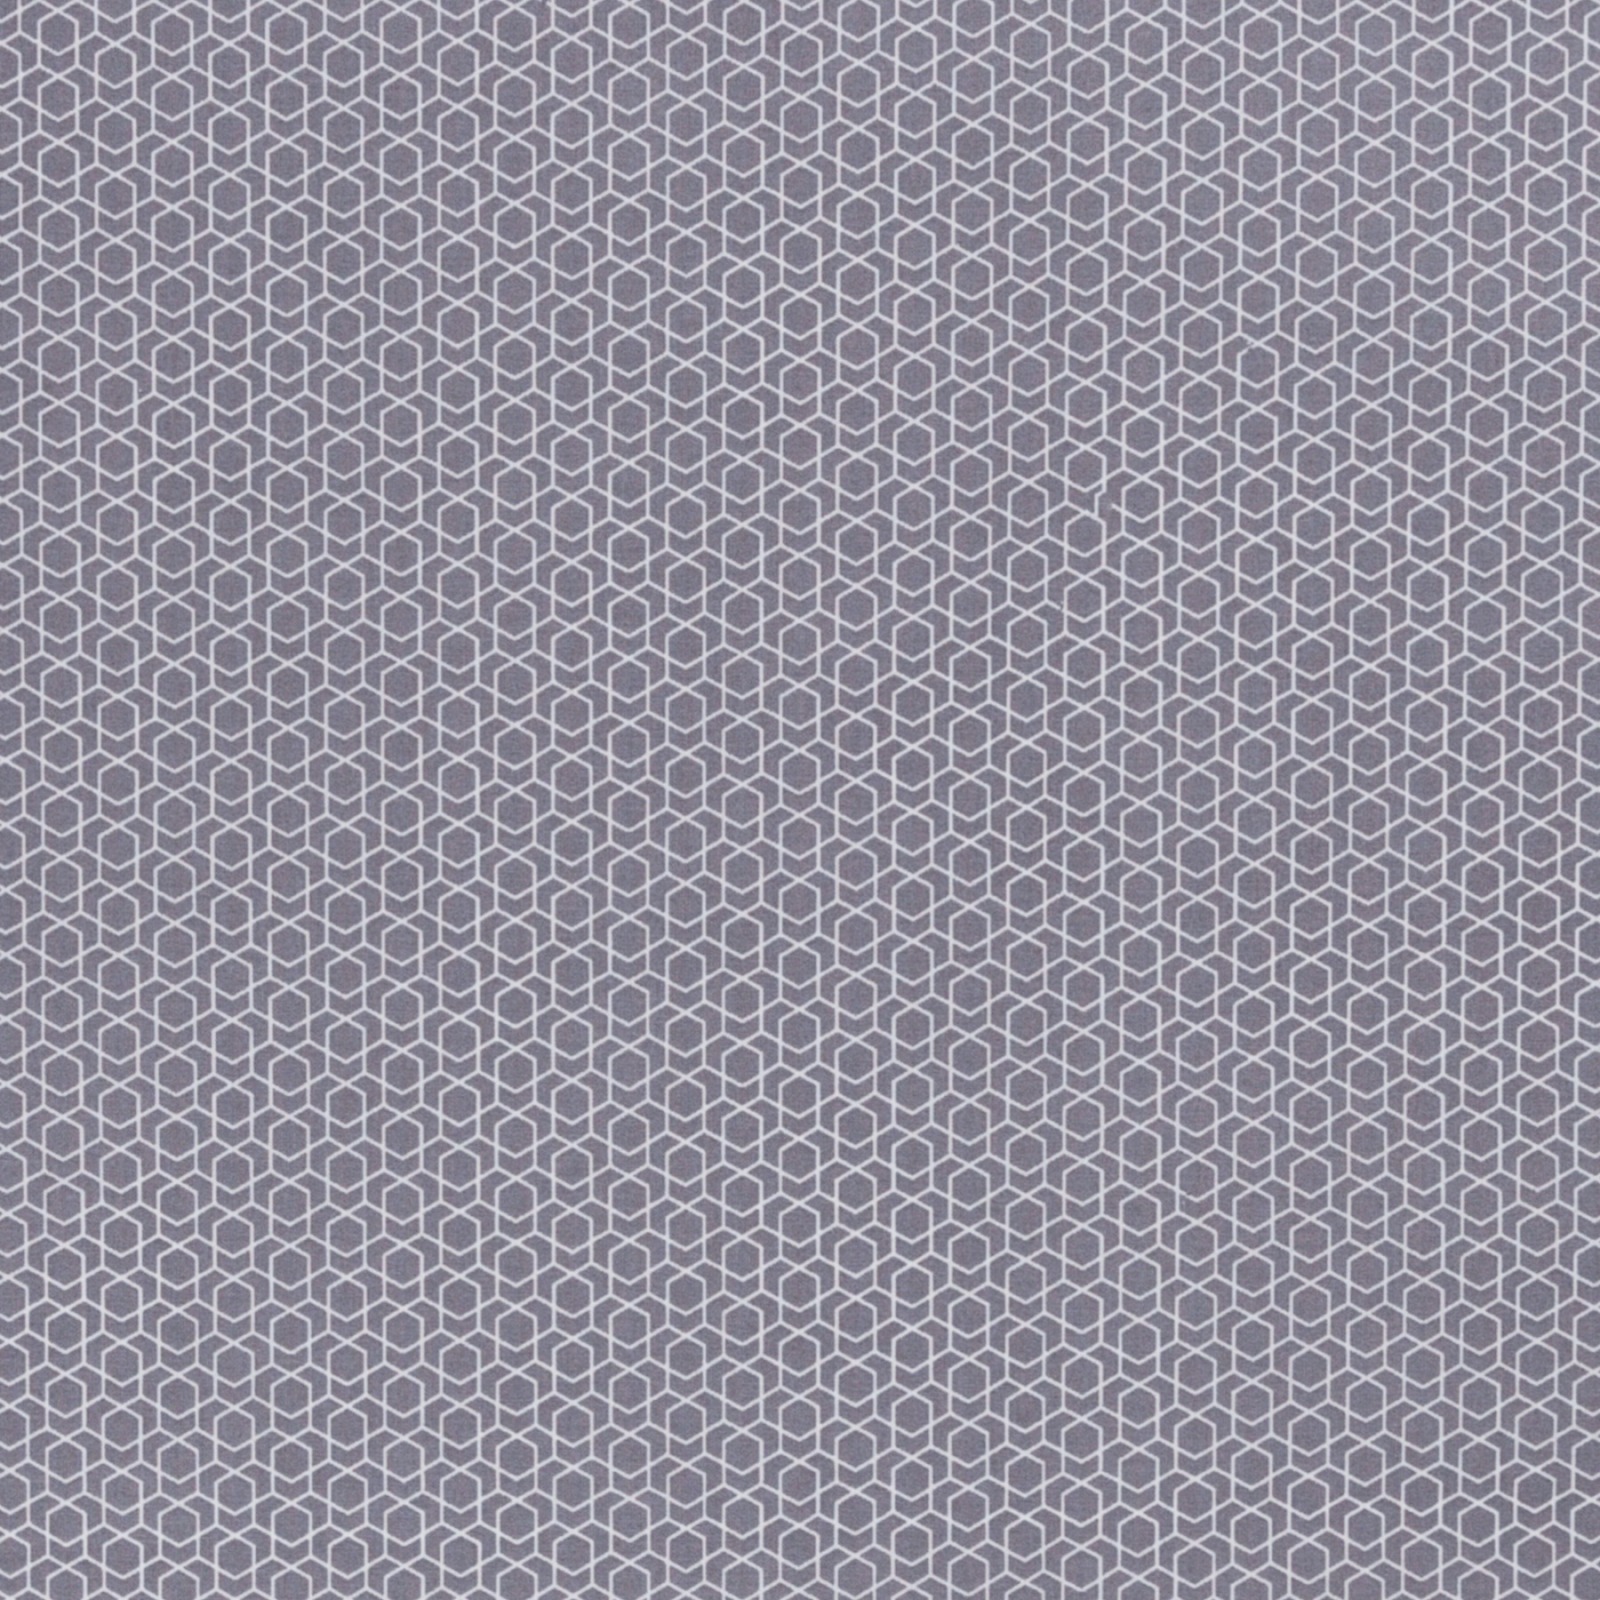 0,5m Beschichtete Baumwolle Leonie geometisches Muster, grau weiß 3